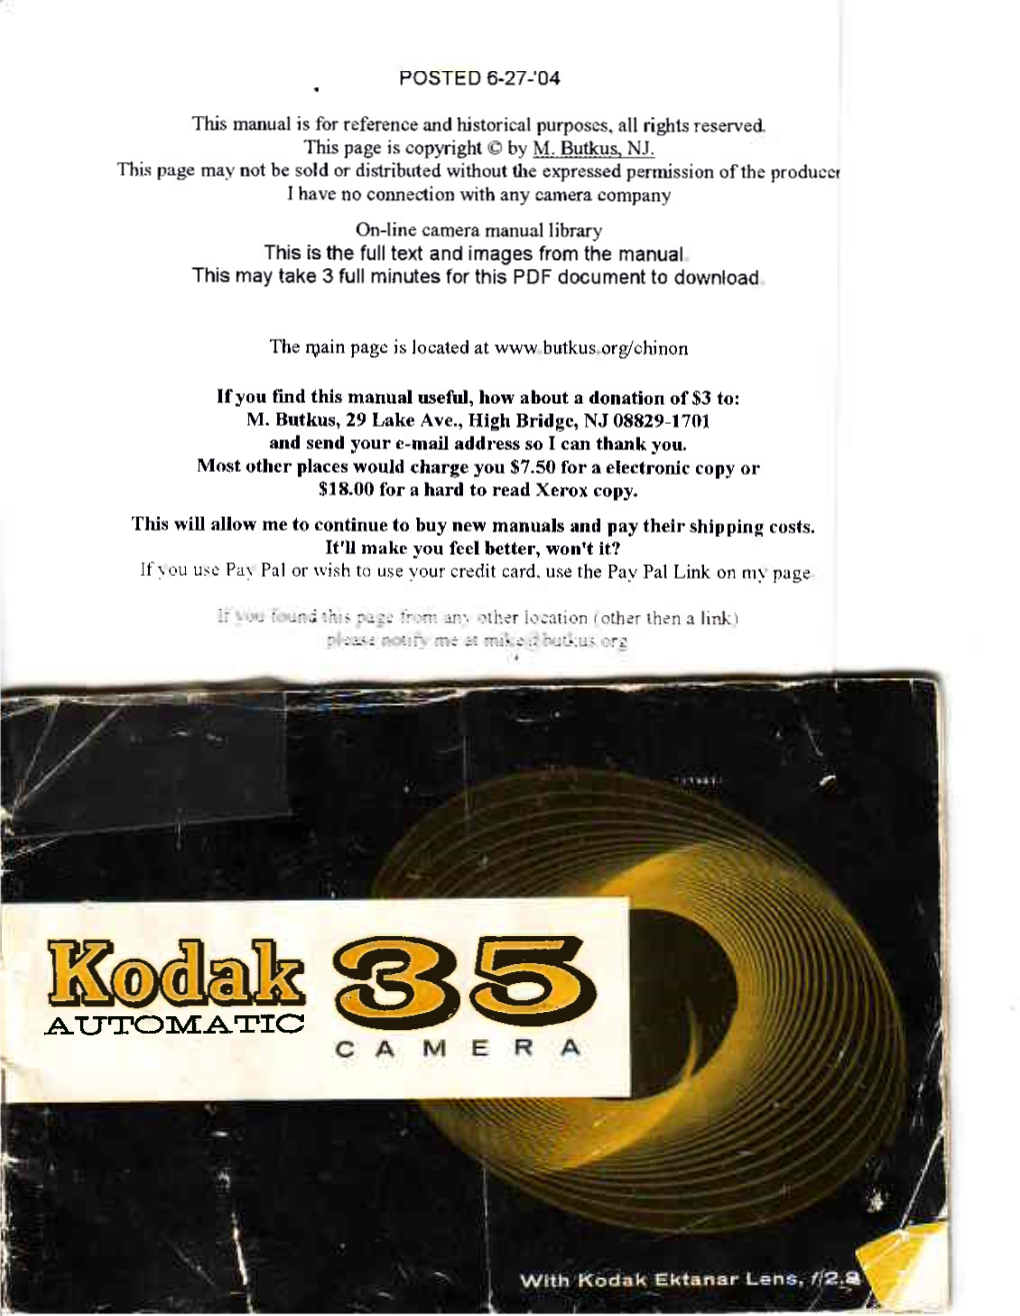 Kodak Automatic 35